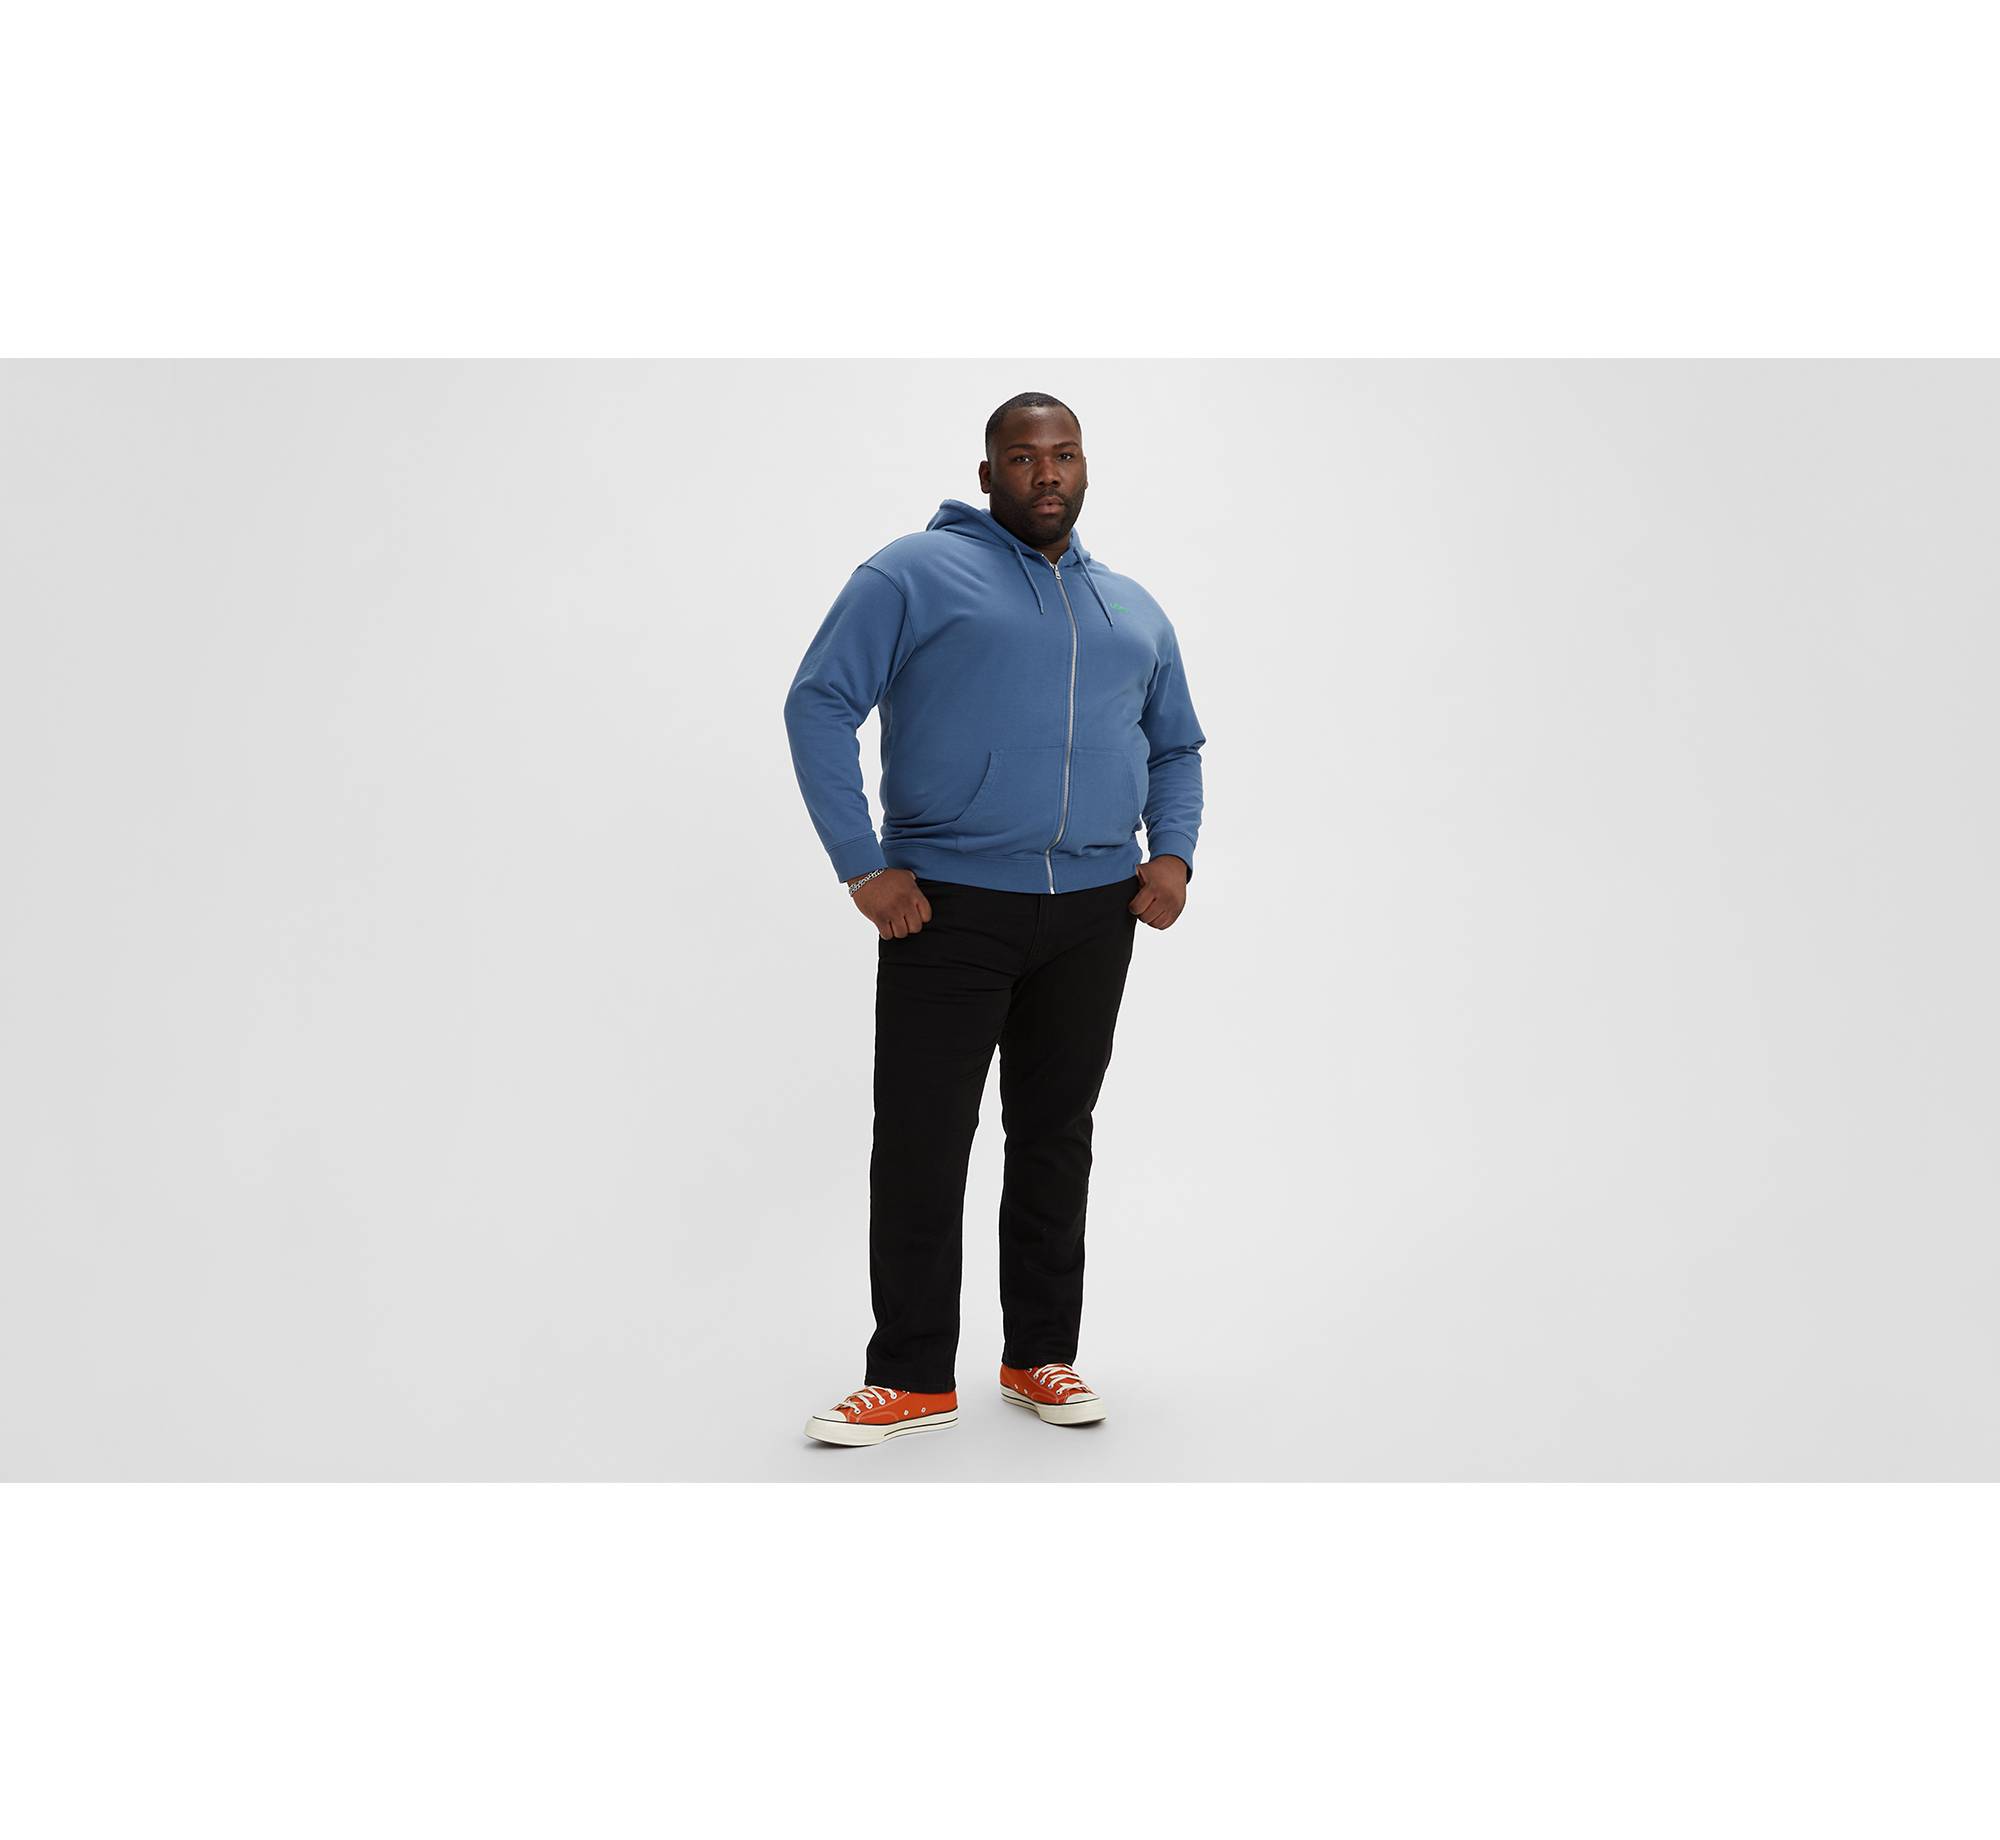 511™ Slim Fit Men's Jeans (Big & Tall) 1